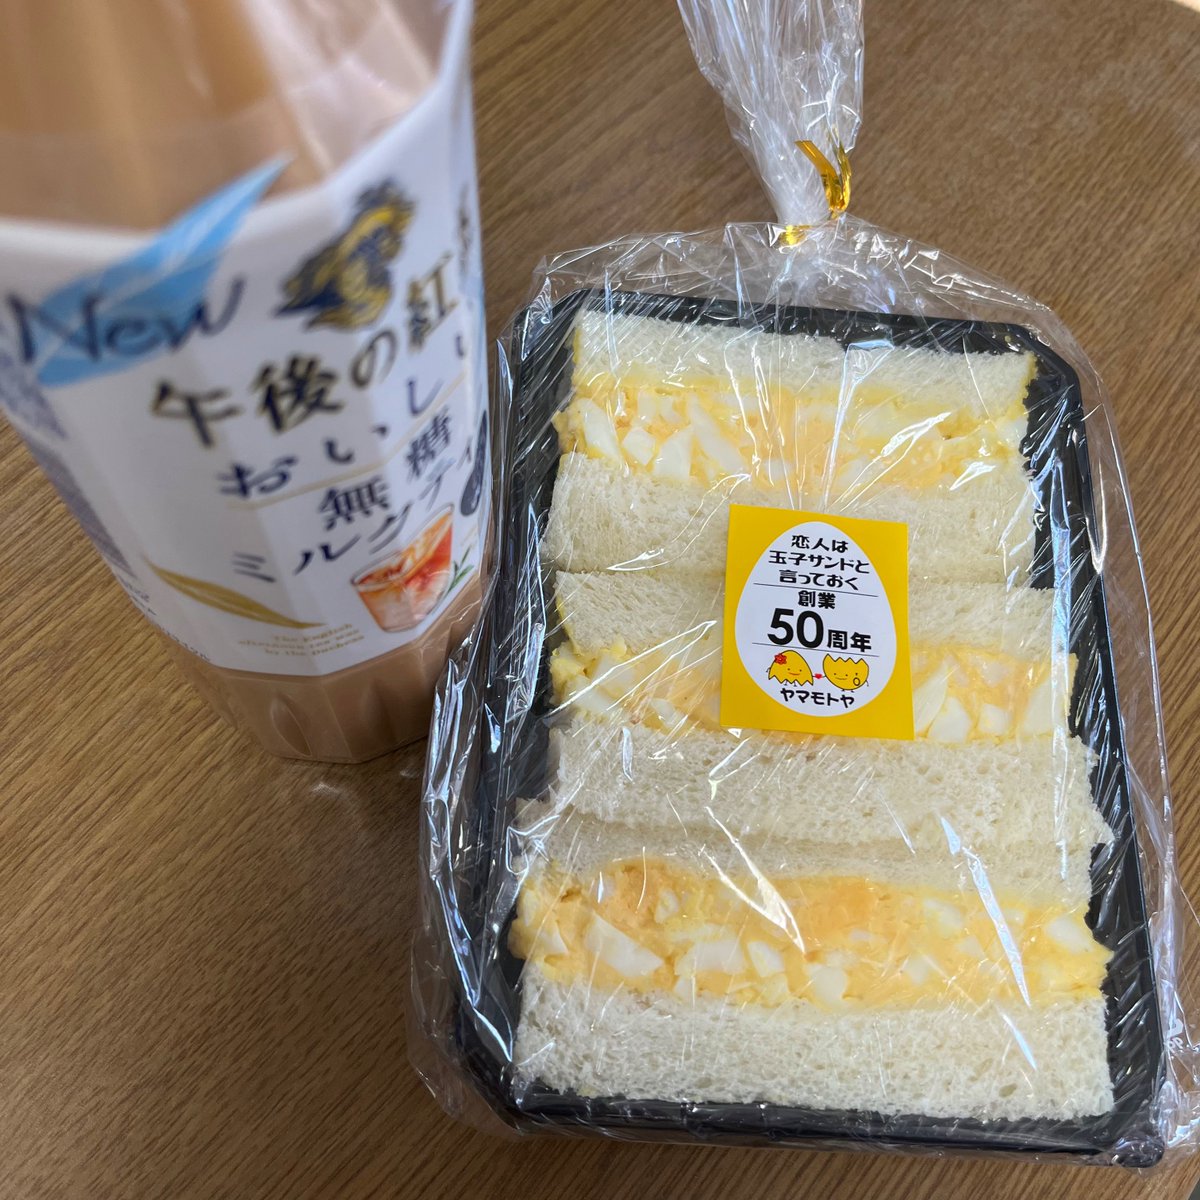 今日の軽食。ドンキで買ってきた株式会社ヤマモトヤ山本幸子「恋人はたまごサンドと言っておく」と午後の紅茶･おいしい無糖ミルクティー。
玉子サンド美味しい😋